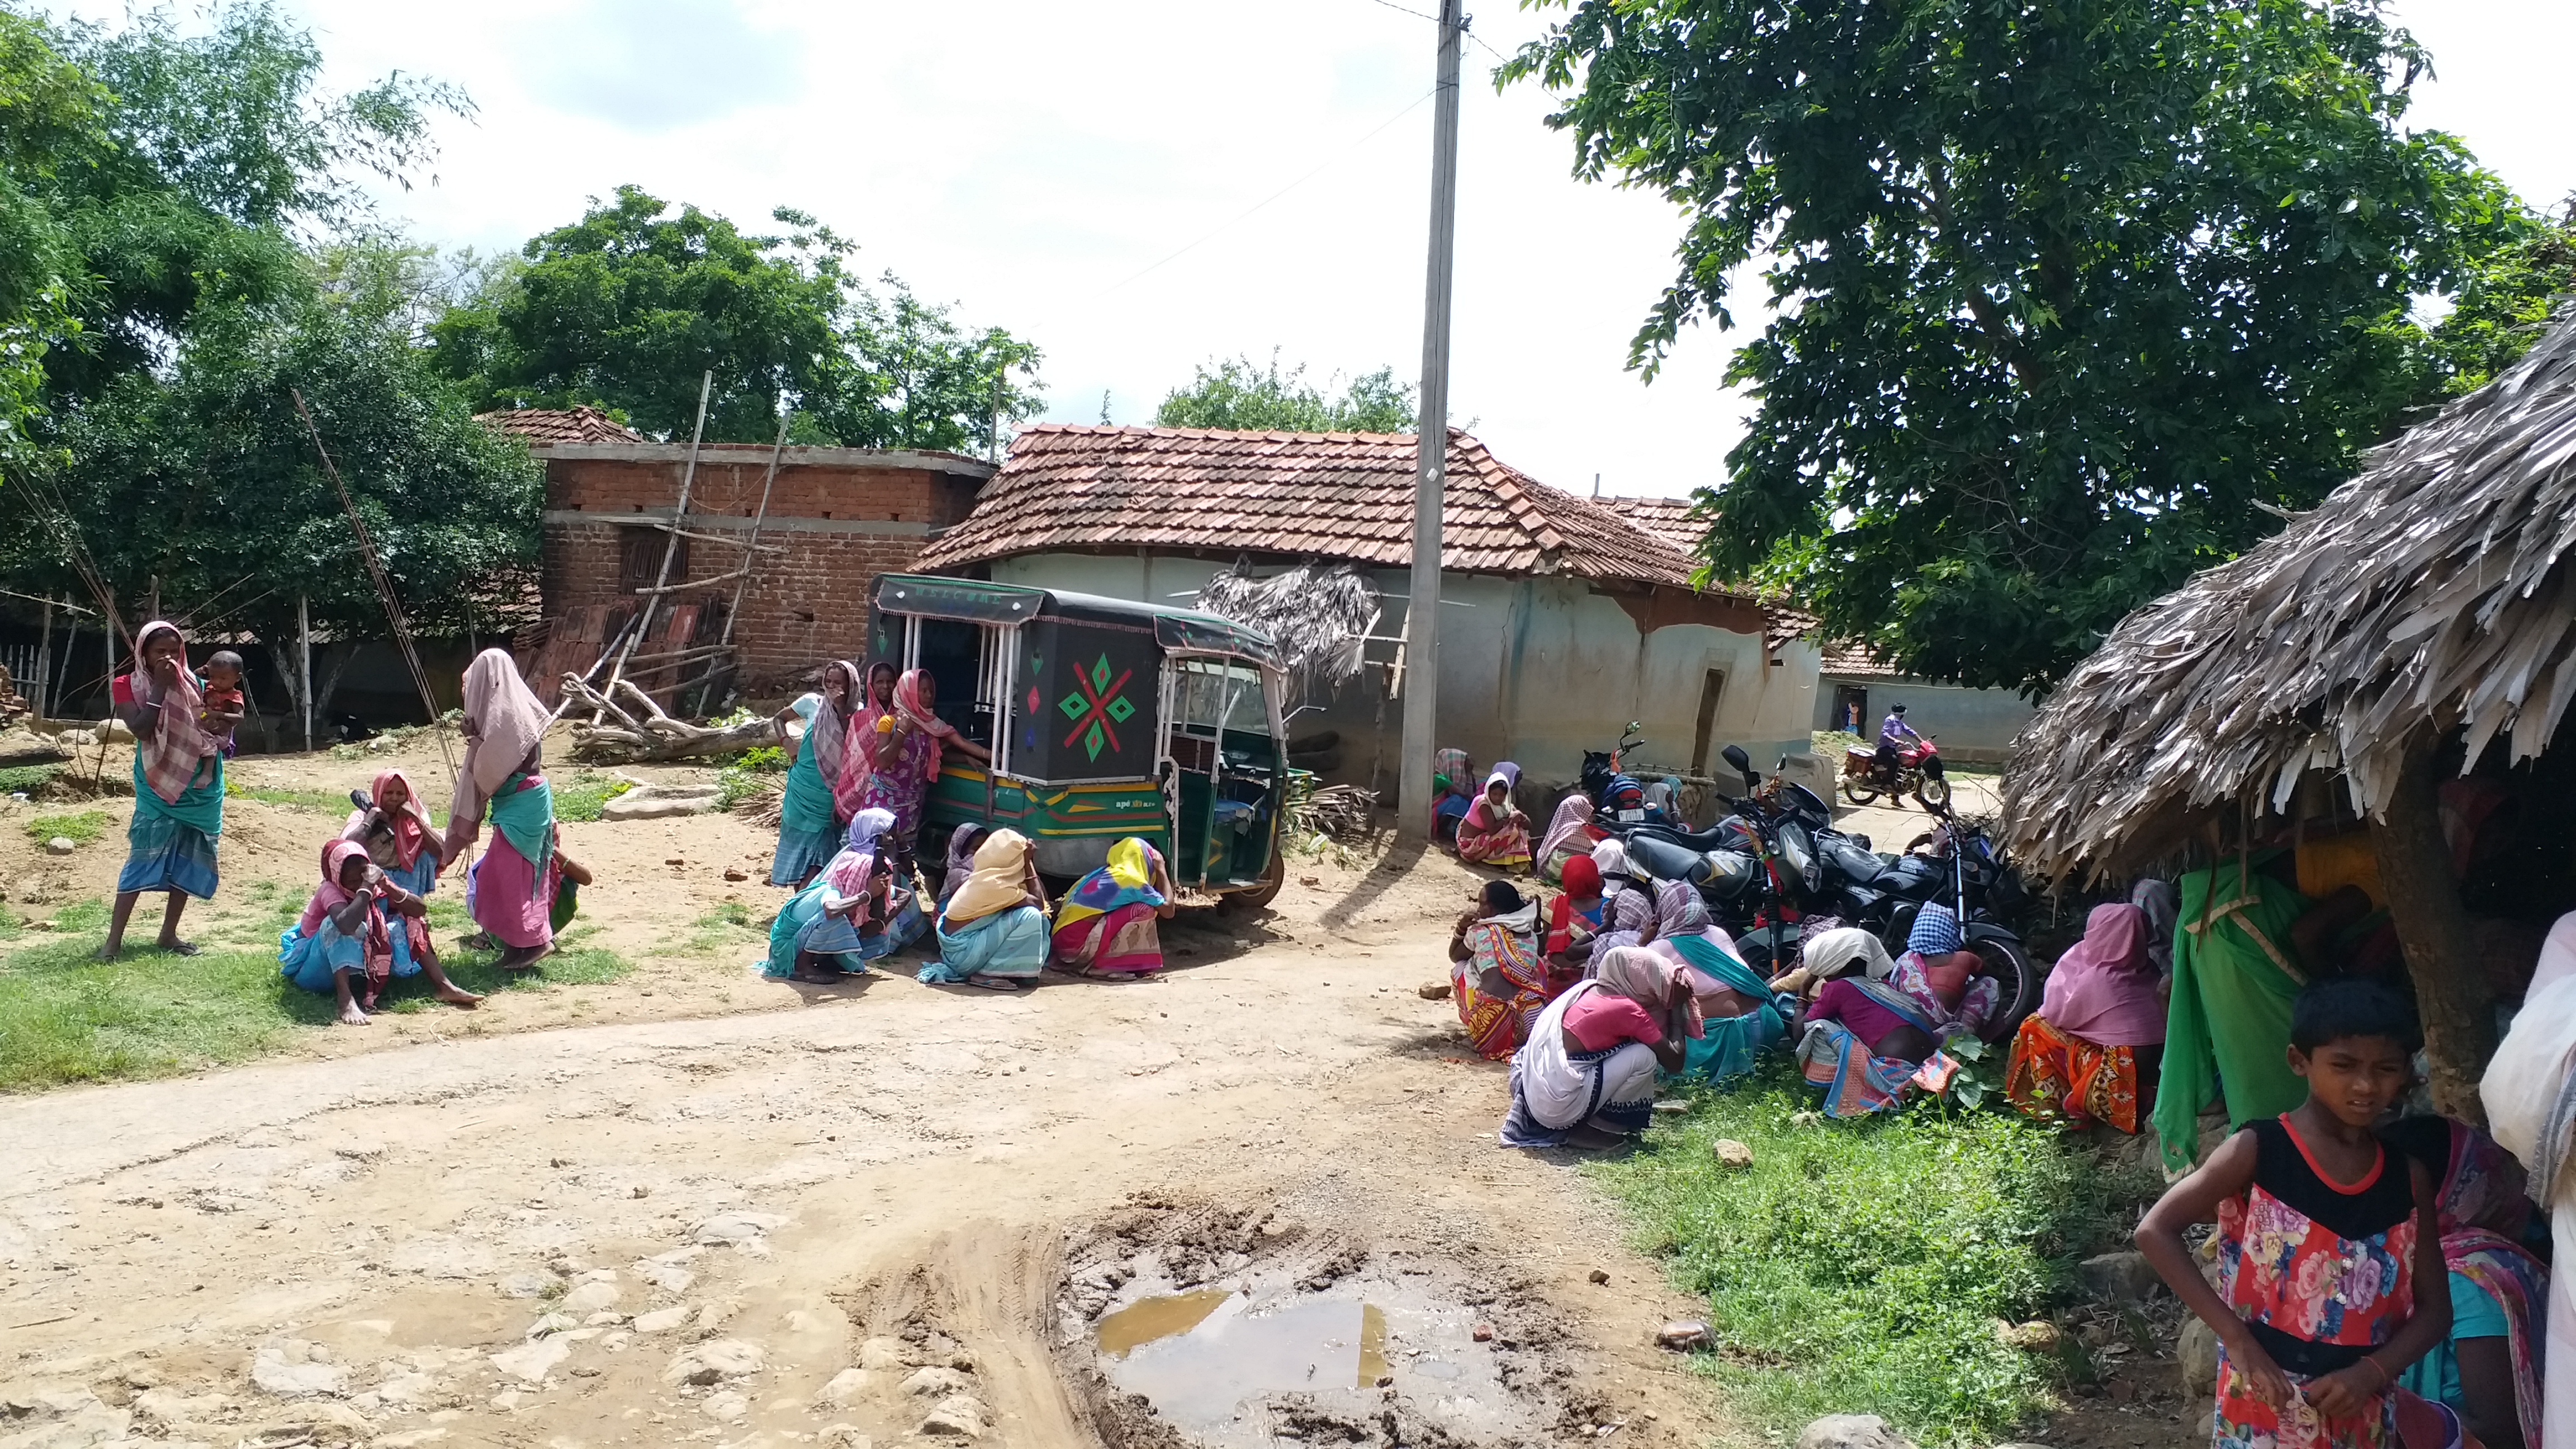 Three children died in Pakur, Weeds in entire village after death of children in Pakur, three children died of  thundering in Pakur, पाकुड़ में तीन बच्चों की मौत, पाकुड़ में बच्चों की मौत के बाद पूरे गांव में मातम, पाकुड़ में वज्रपात से तीन बच्चों की मौत